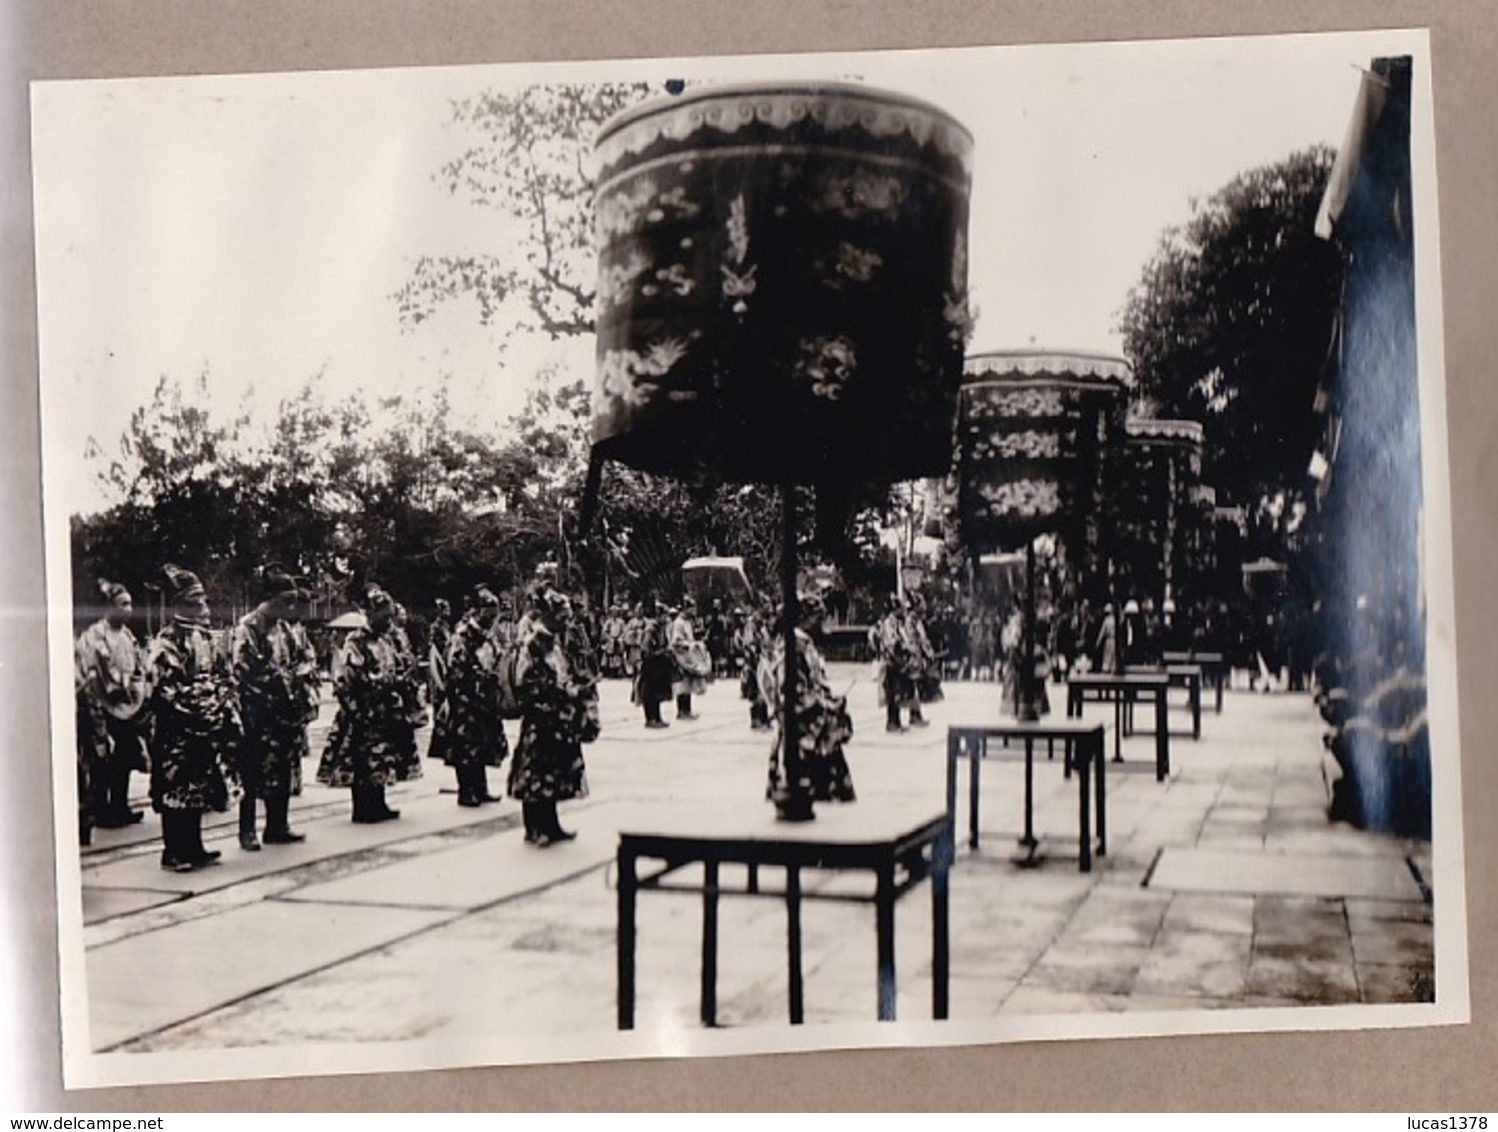 VIET NAM / 1926 / INTRONISATION EMPEREUR BAO DAI / EXCEPTIONNEL CARNET PHOTOS / A VOIR ++